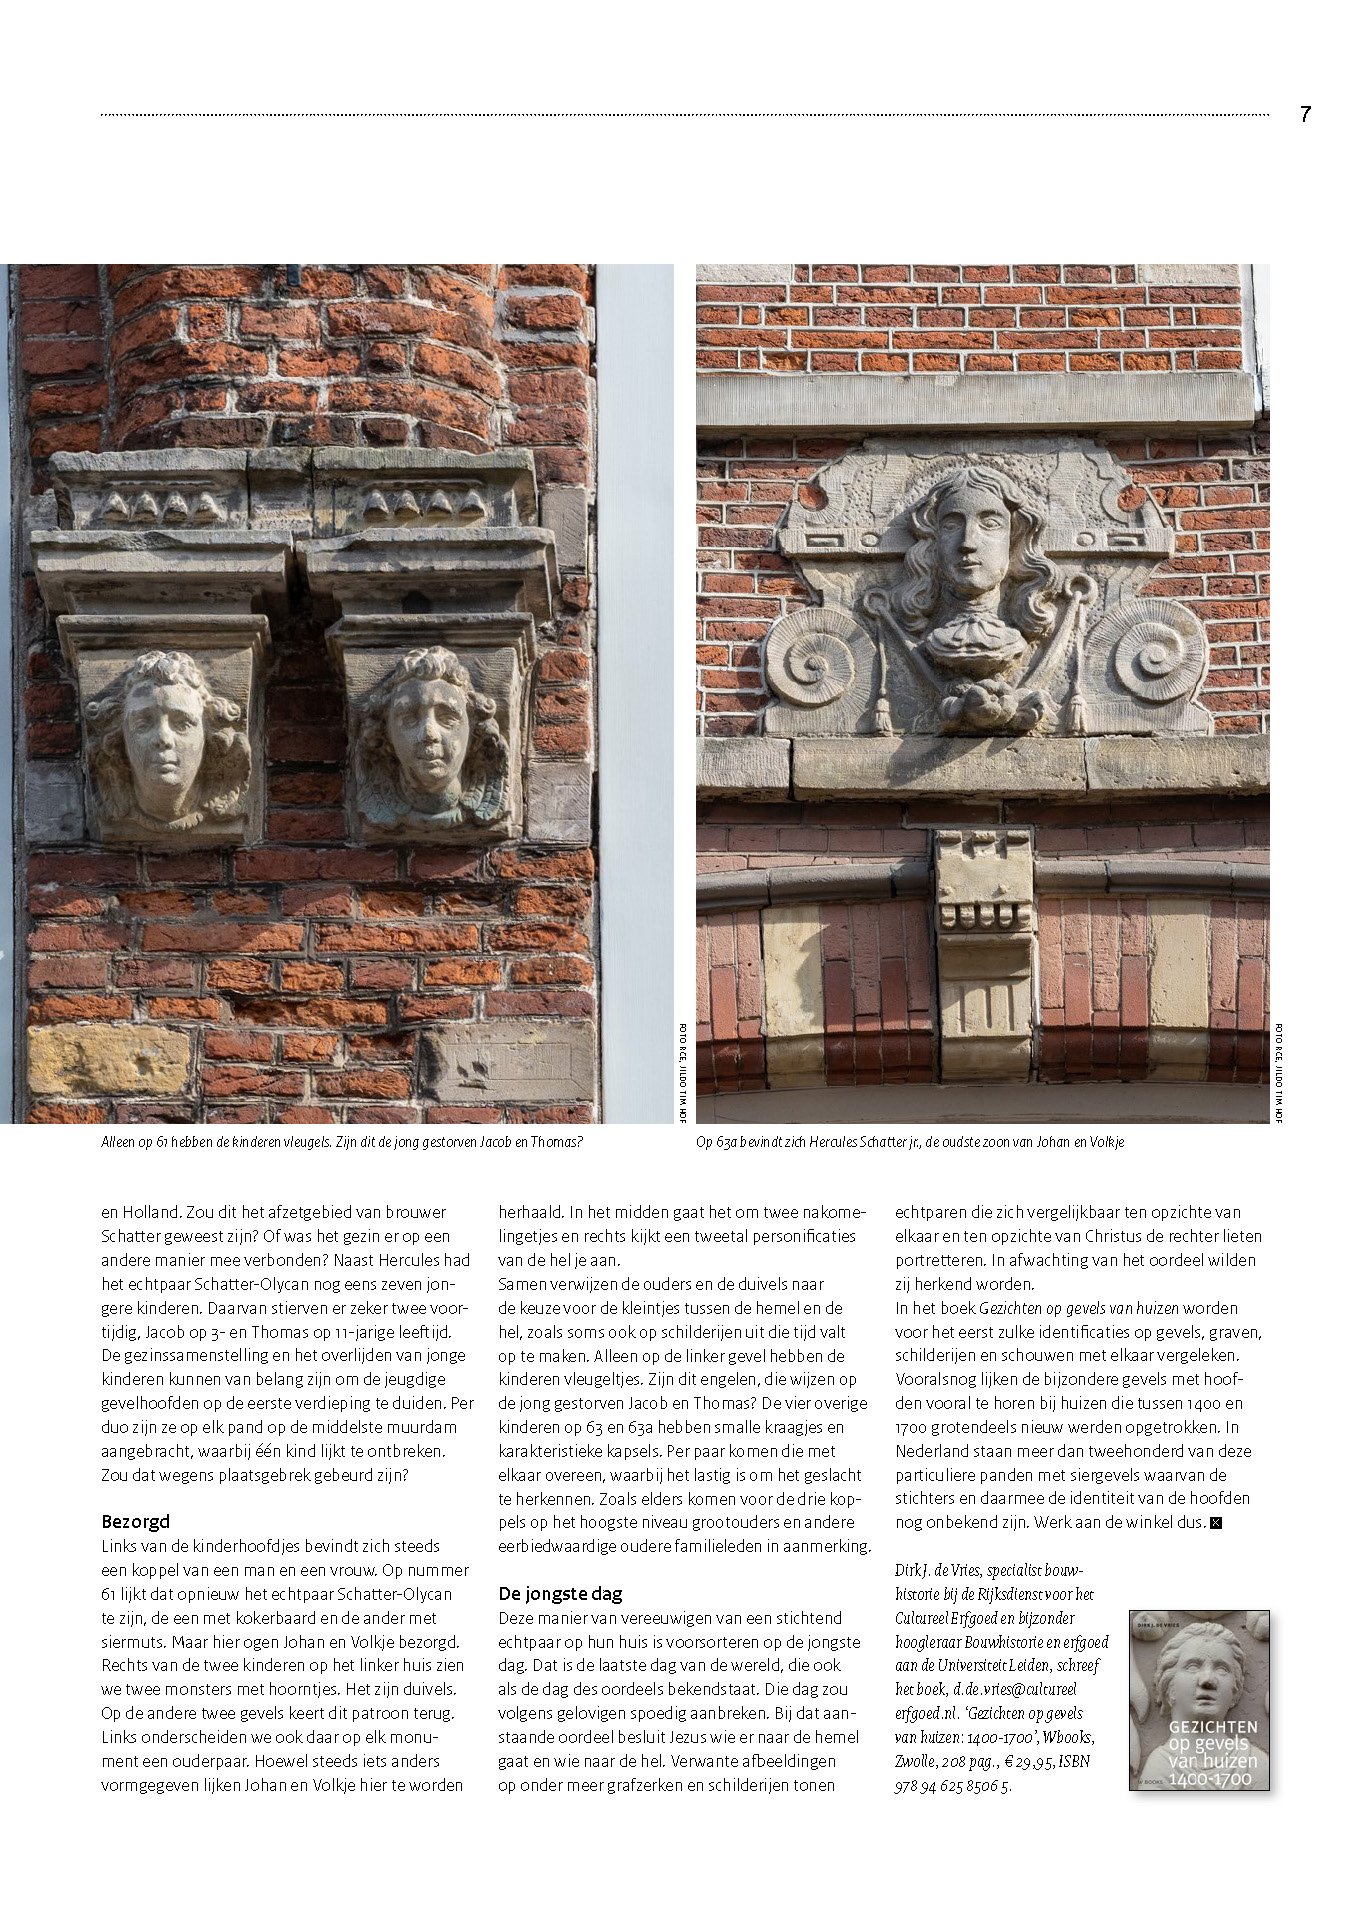 Tijdschrift van de Rijksdienst voor het Cultureel Erfgoed, november 2022 3.jpg